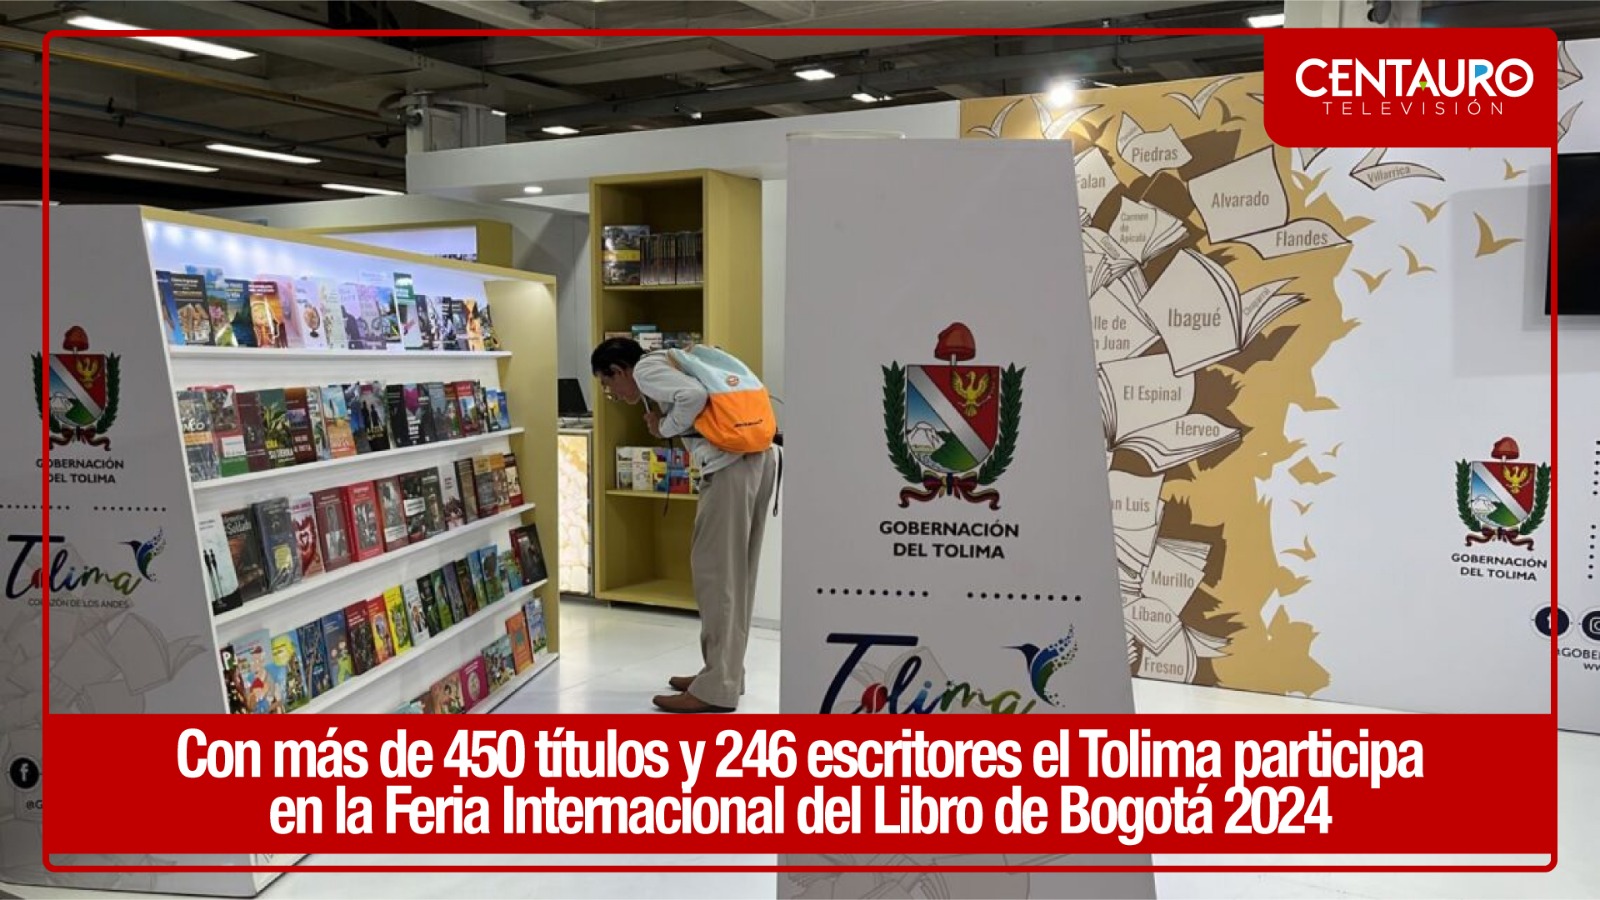 Con más de 450 títulos y 246 escritores, el Tolima participa en la Feria Internacional del Libro de Bogotá 2024